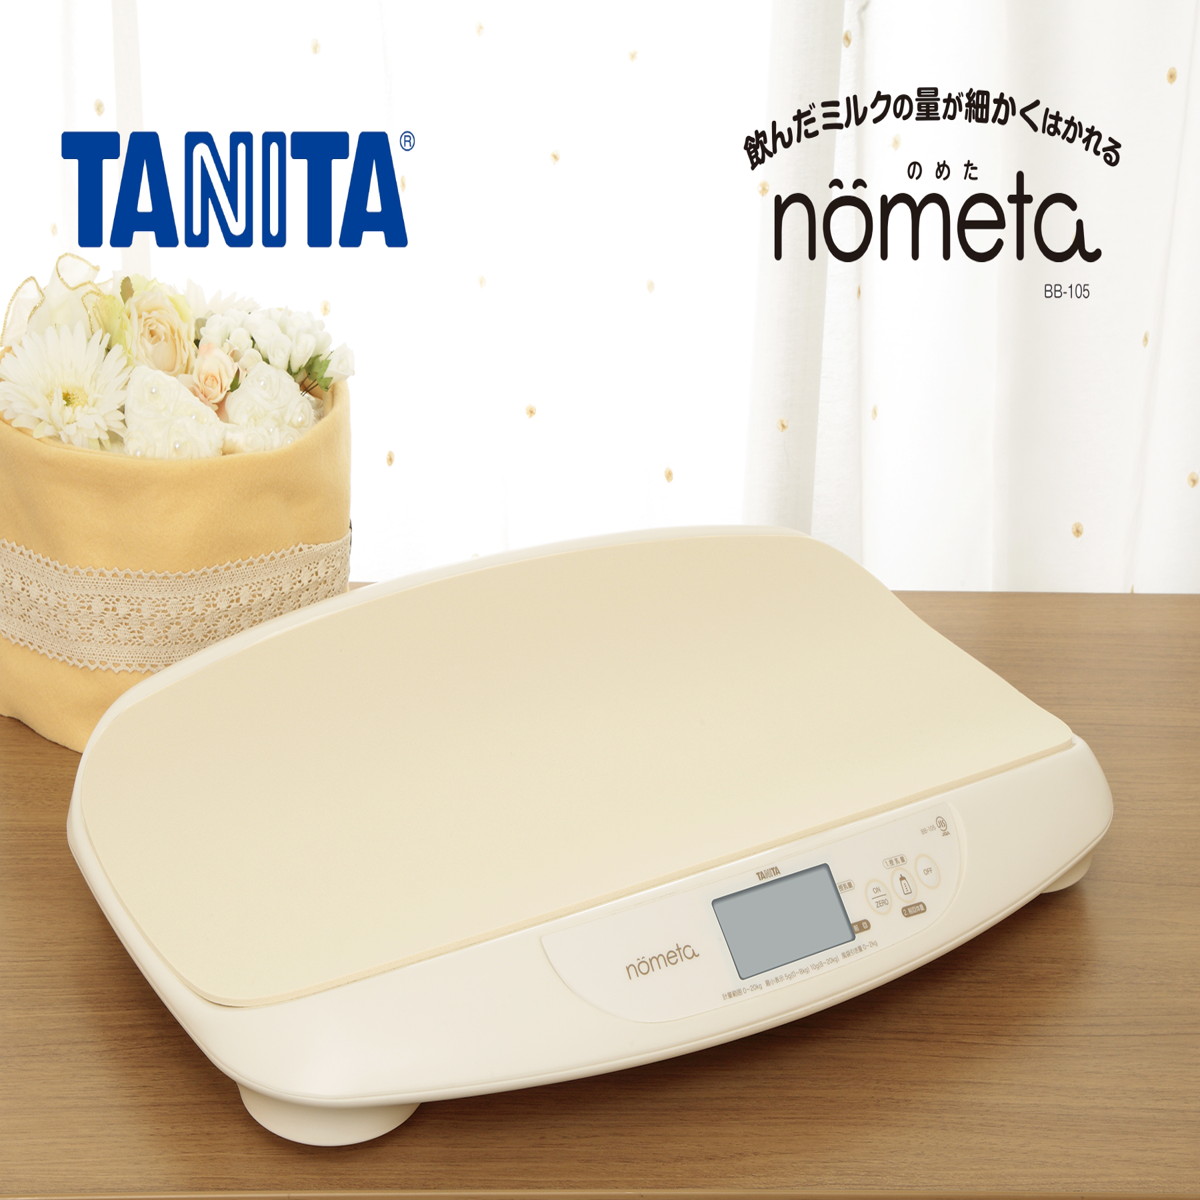 TANITA 体重計 ベビースケール アイボリー nometa 授乳量機能付き 飲んだミルクの量が1g単位でわかる やわらかマット付属